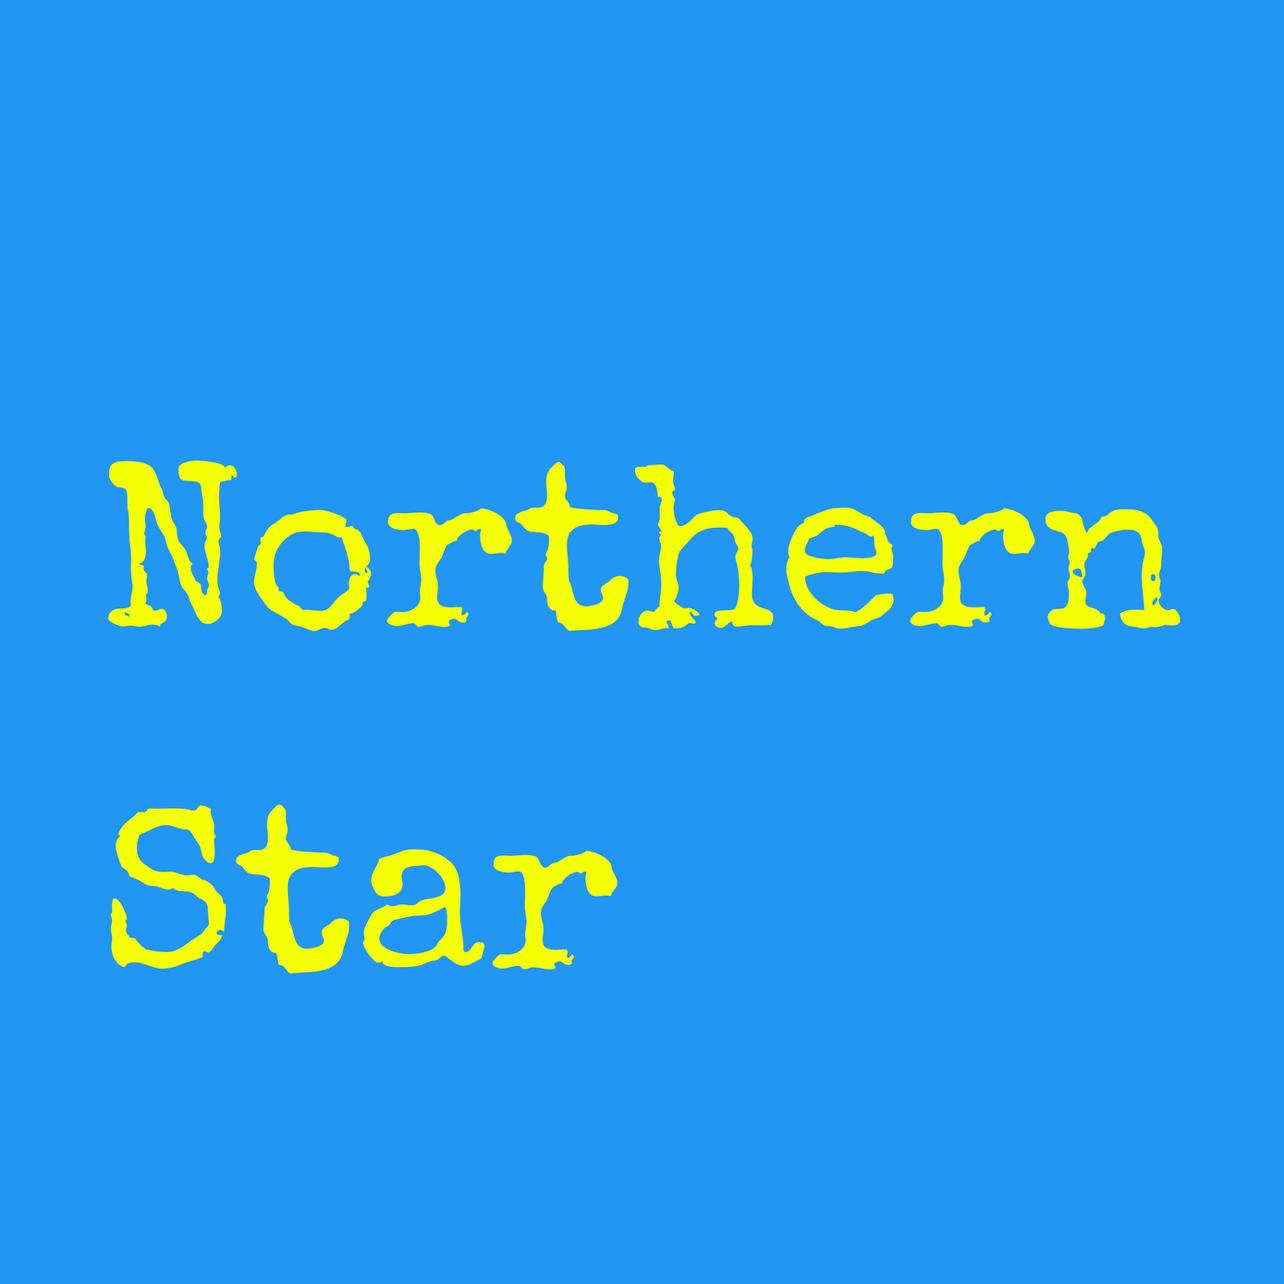 NorthernStarck's images